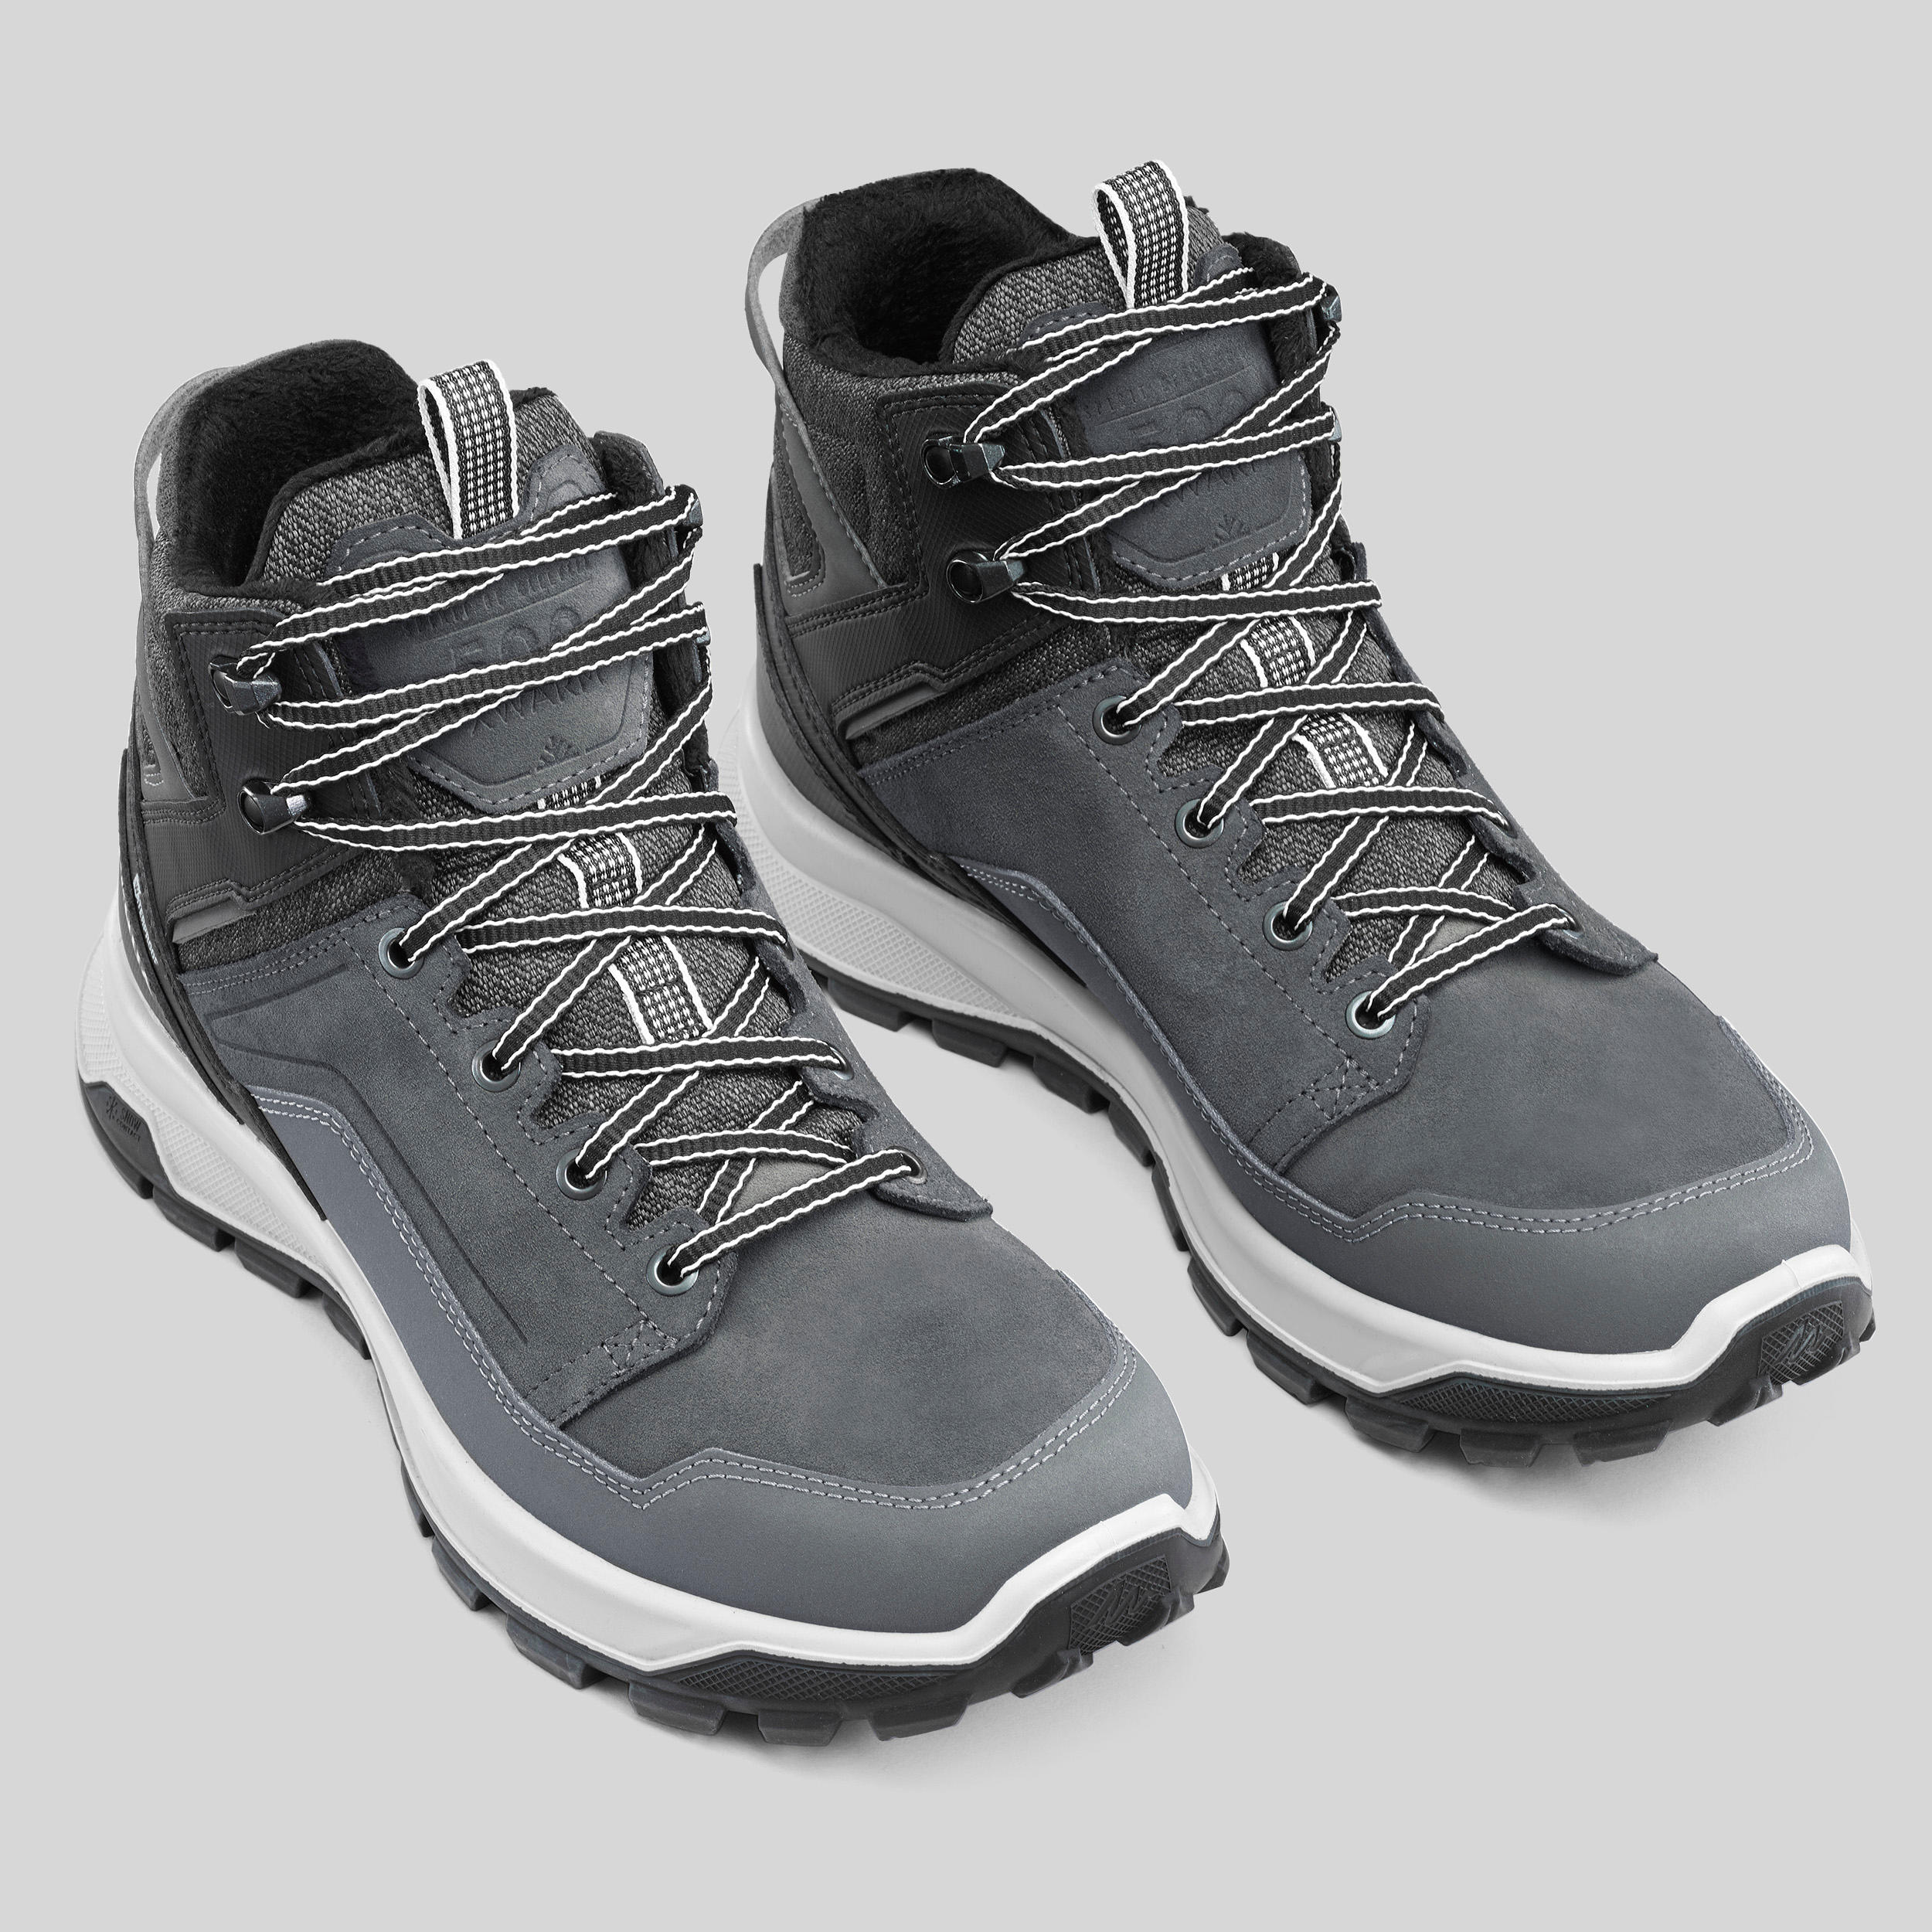 Chaussures de randonnée imperméables hommes - SH 500 X-WARM gris - QUECHUA